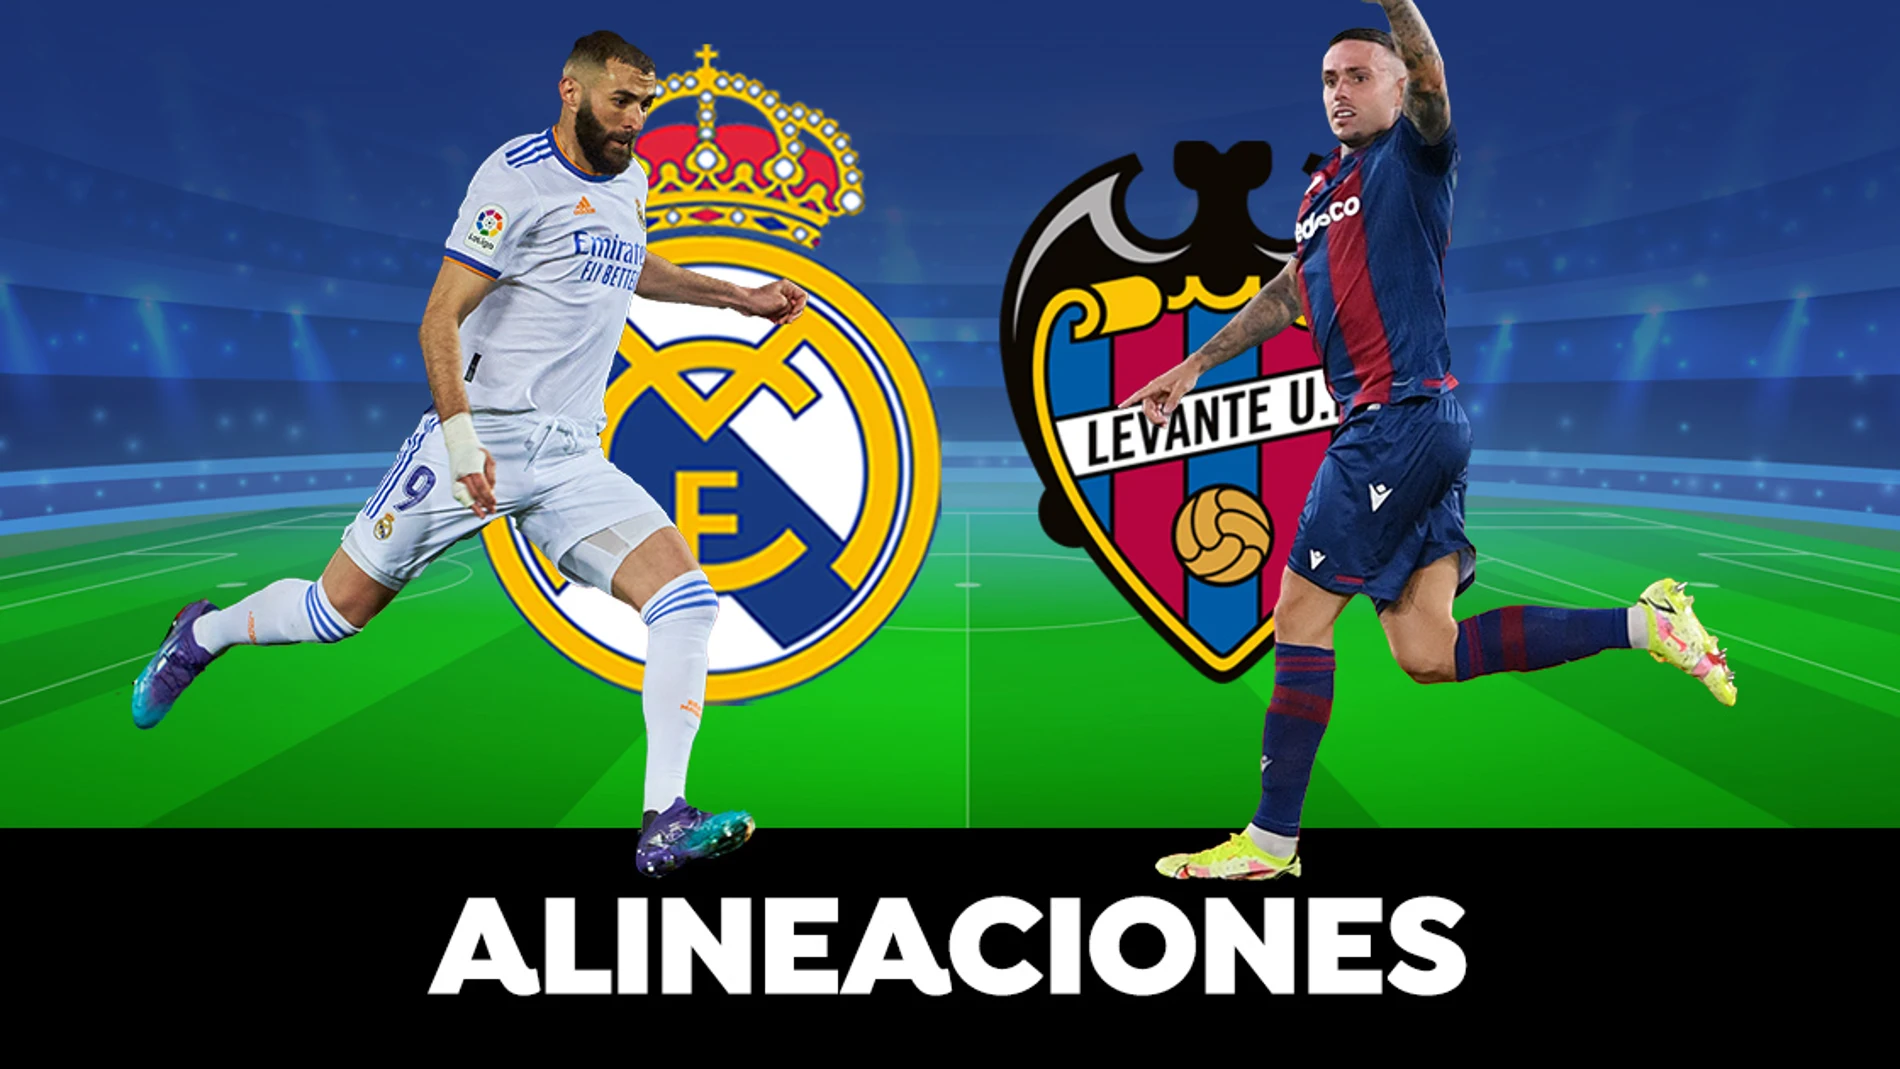 Alineaciones del Real Madrid - Levante